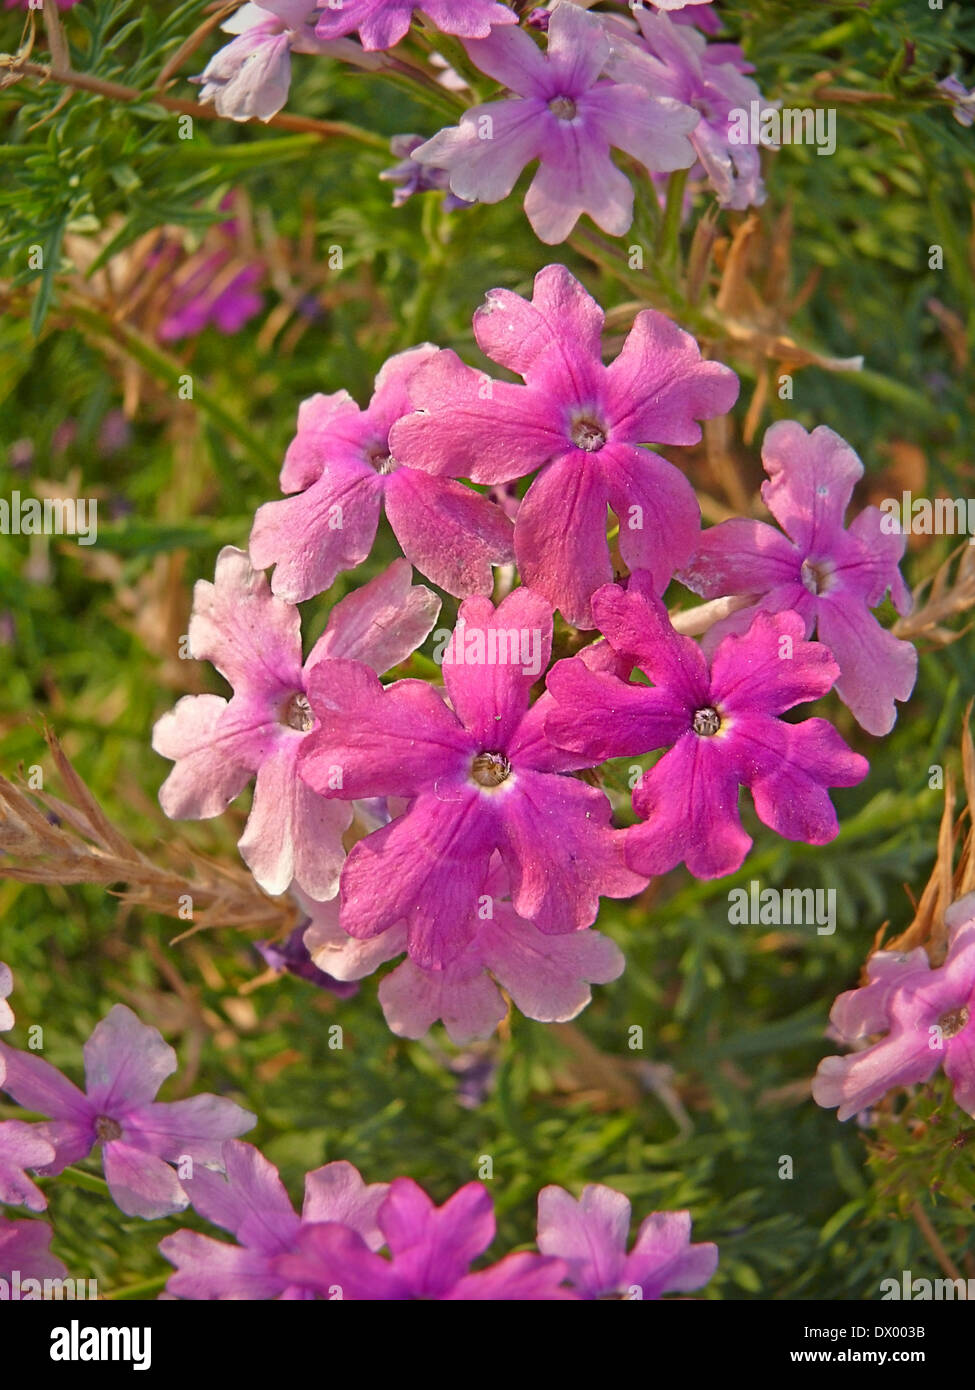 Flowers of Peruvian Verbena, Glandularia peruviana Stock Photo